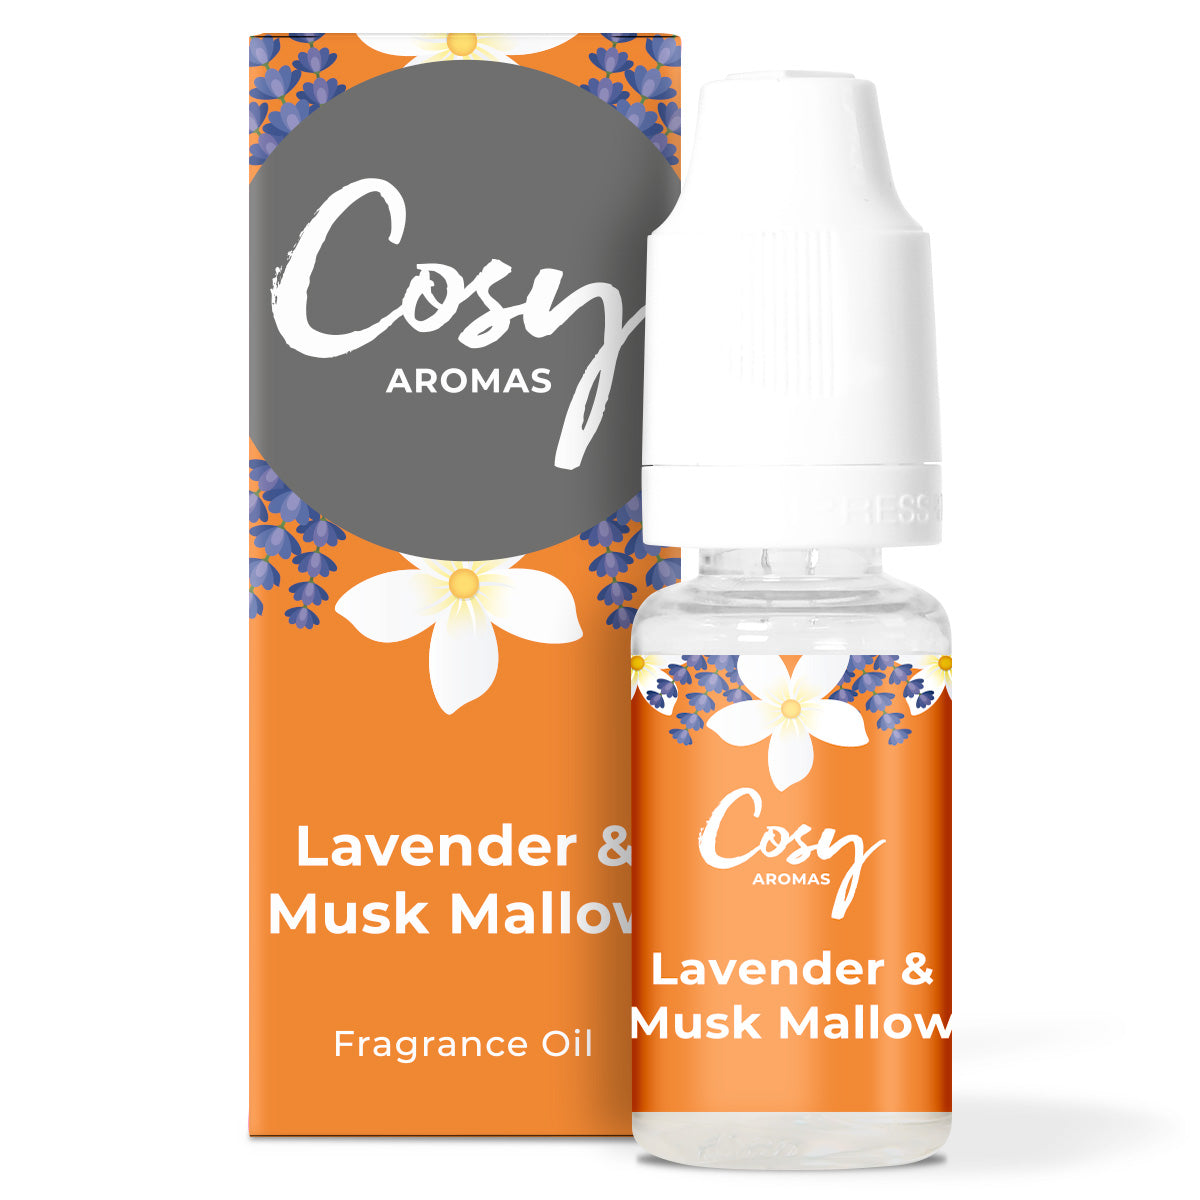 Lavender & Musk Mallow Fragrance Oil.